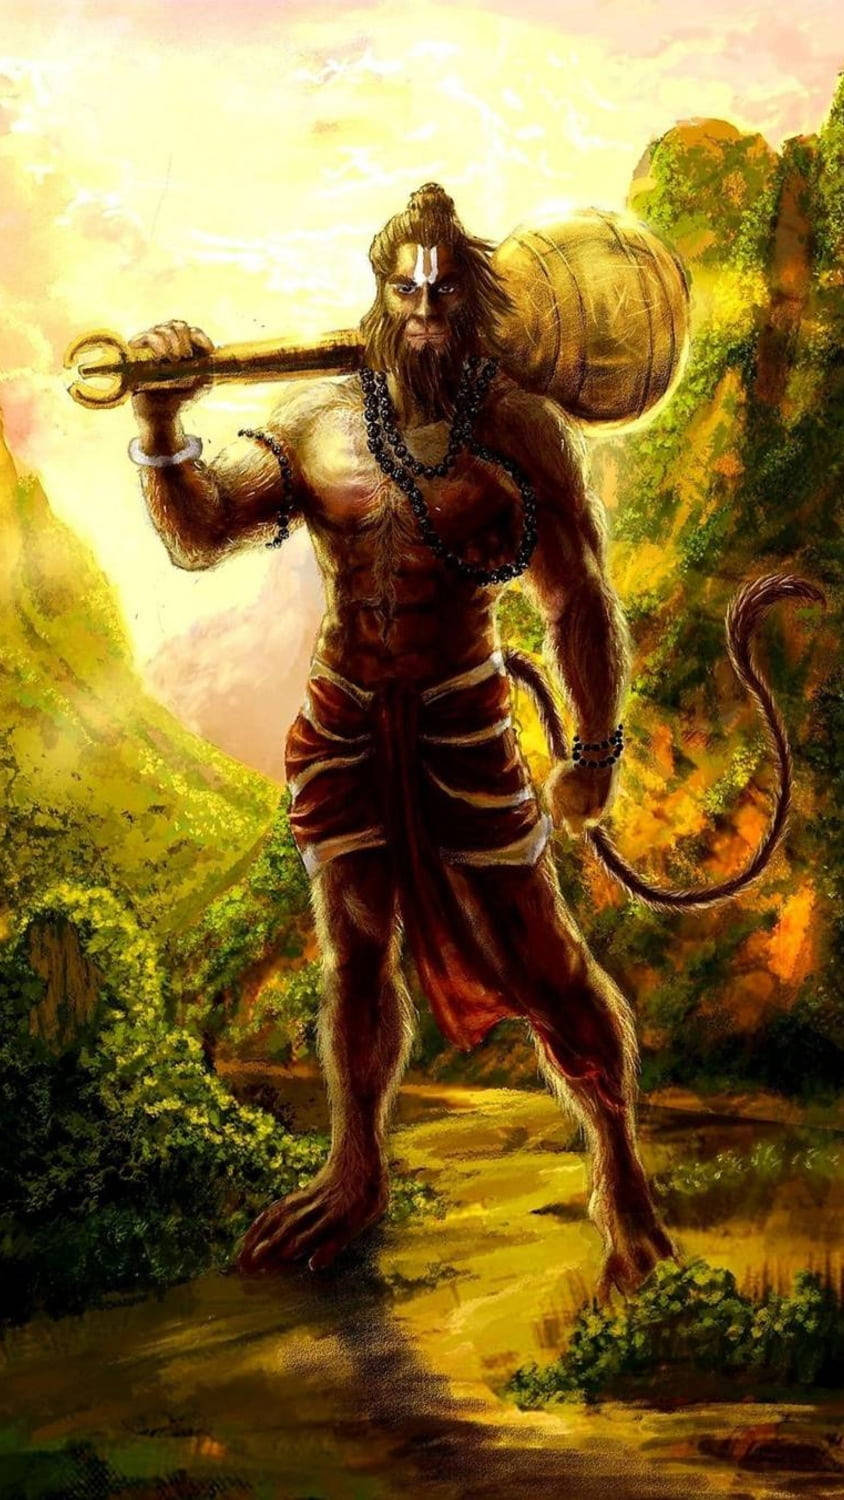 Download Powerful Hindu God Hanuman Phone Wallpaper 